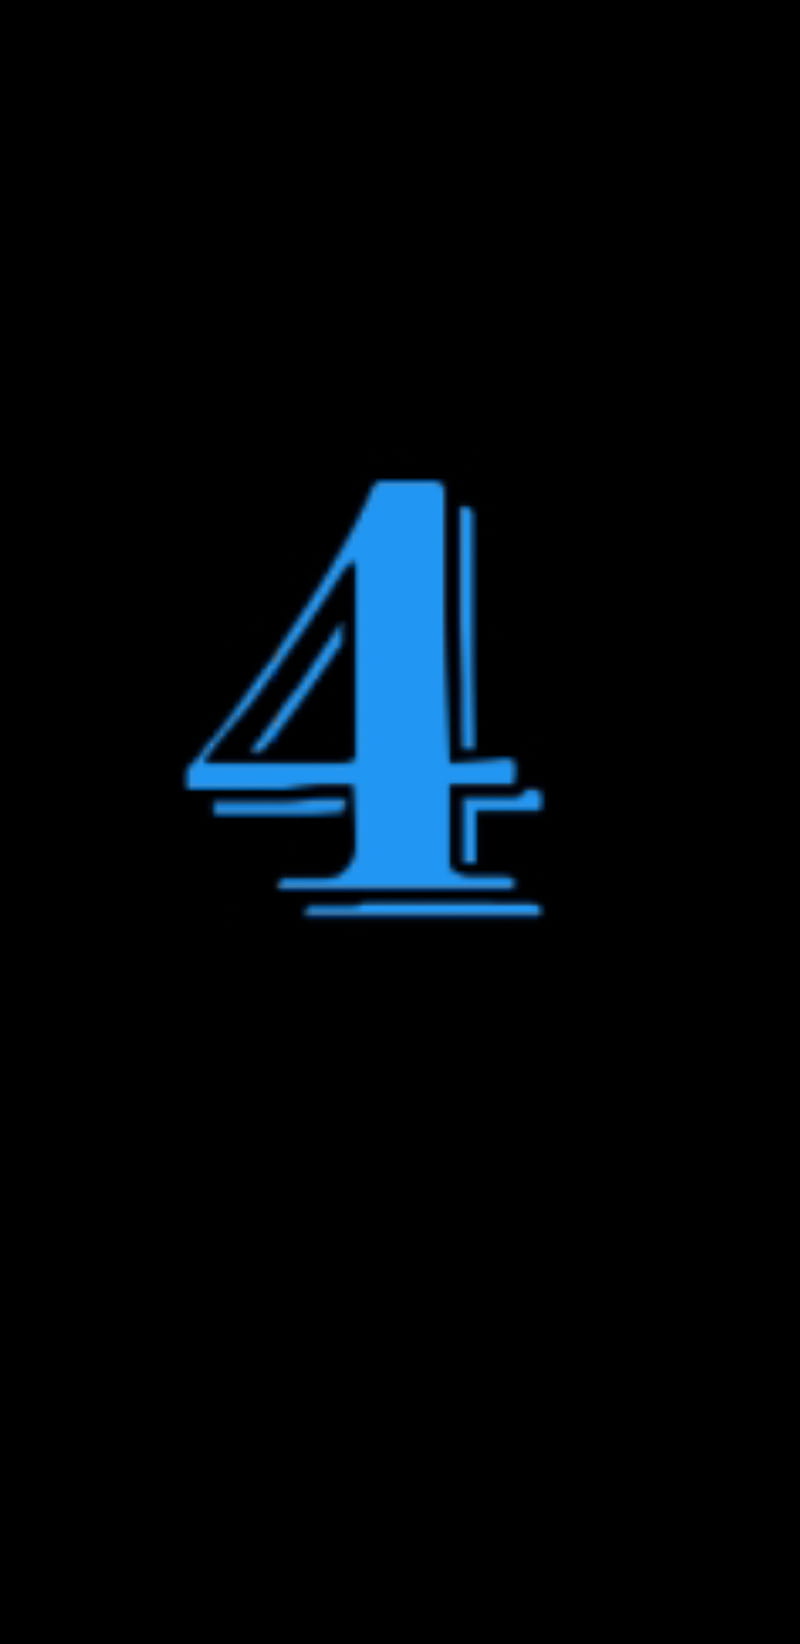 nr4, number 4, numbers, blue, black, HD phone wallpaper